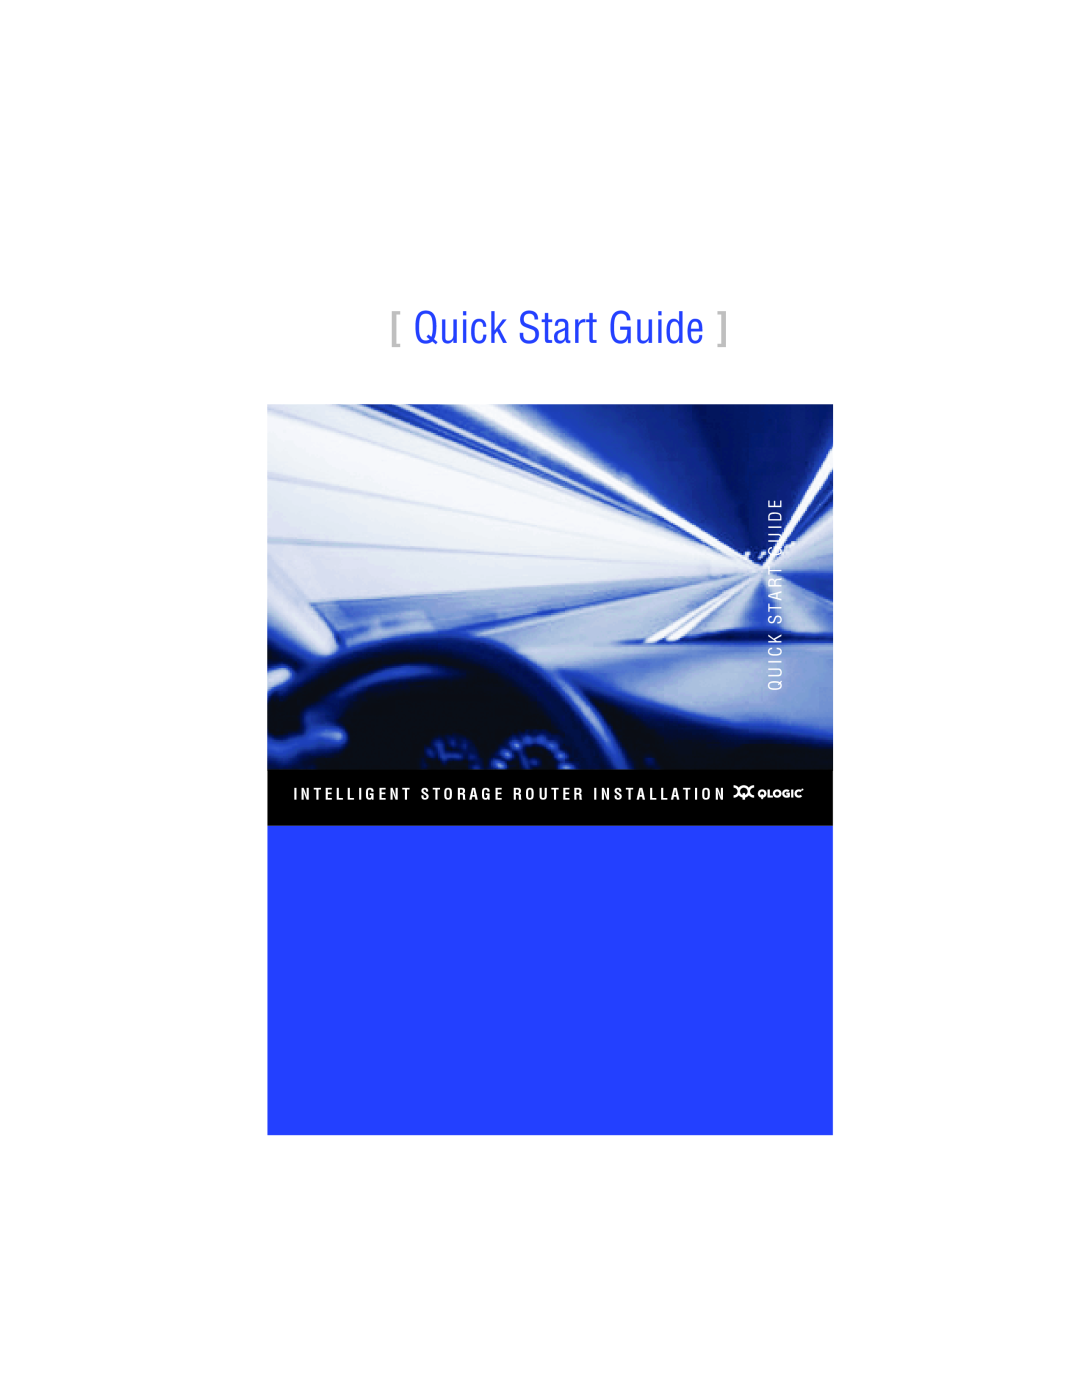 Q-Logic ISR6140 quick start Quick Start Guide, Q U I C K S T A R T G U I D E 